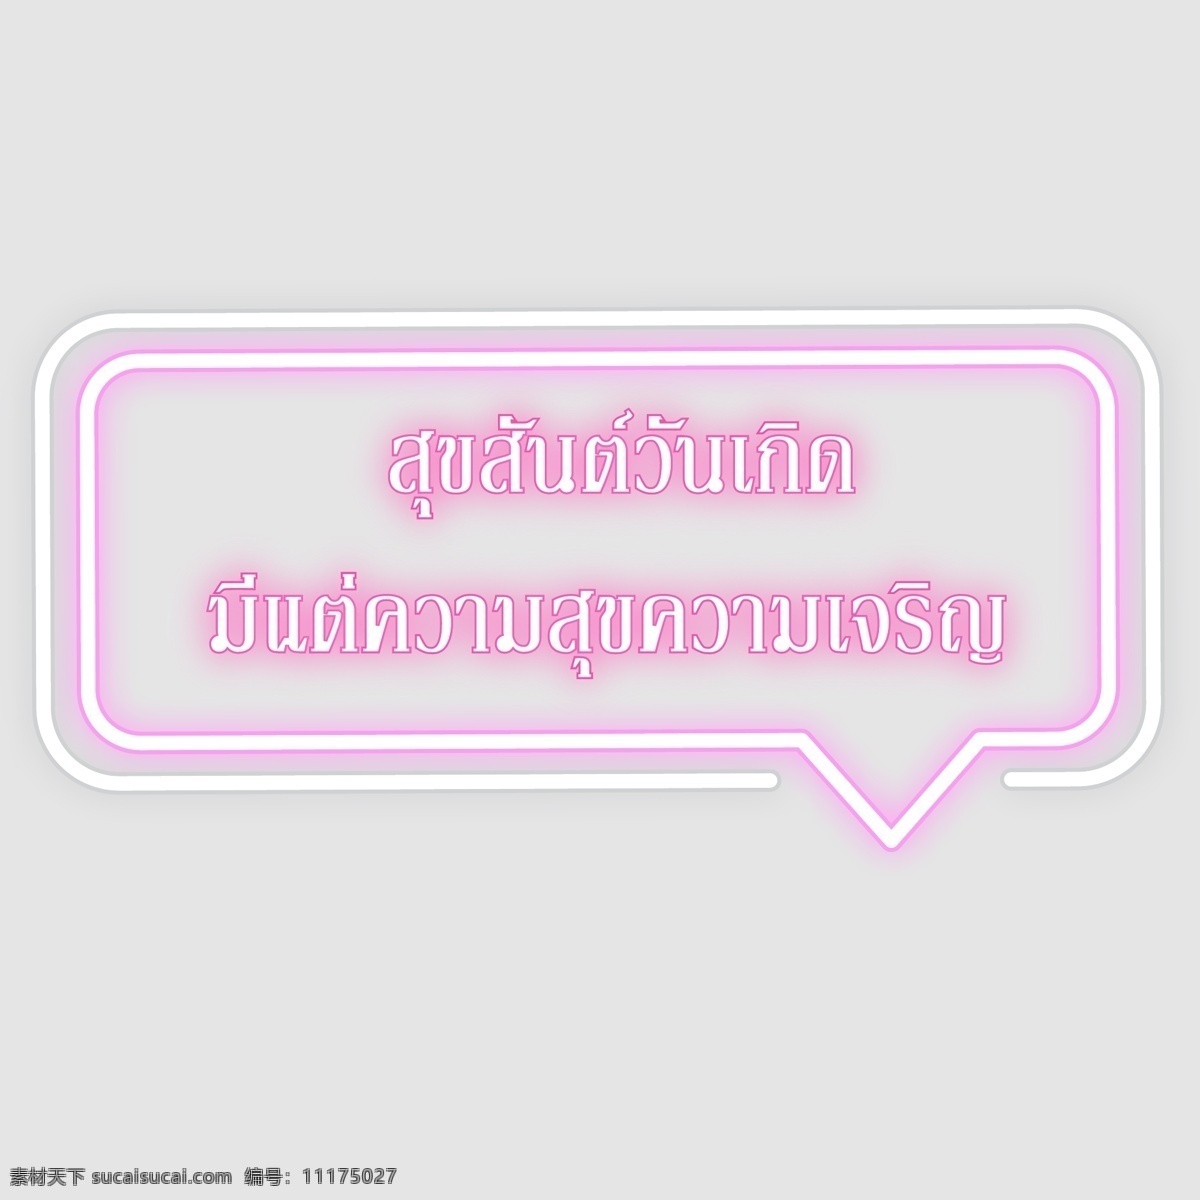 泰国 字母 字体 生日 快乐 幸福 繁荣 粉红色 框 彩虹 粉红